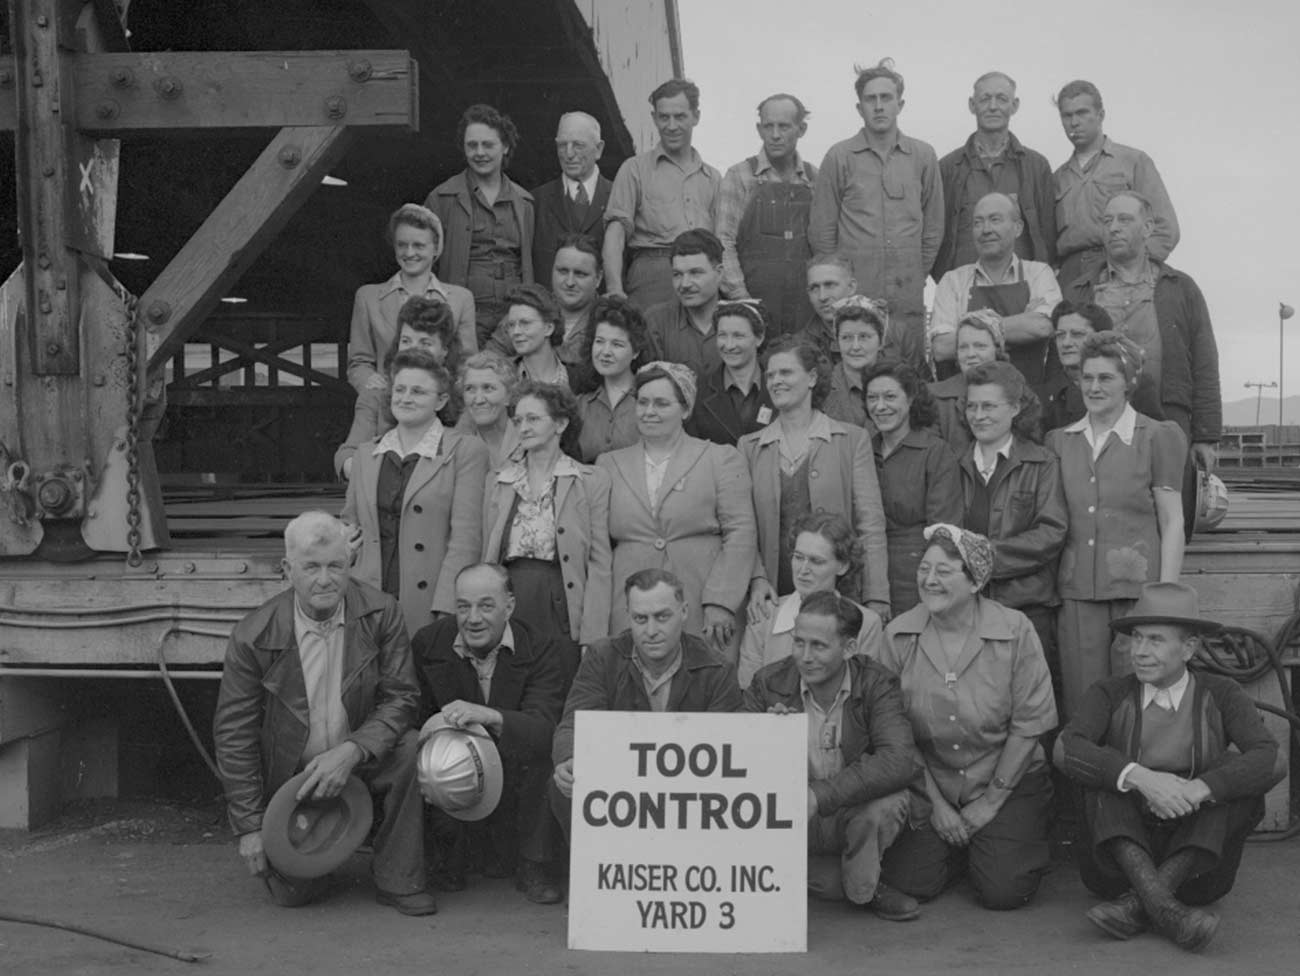 Tool Control, Richmond Kaiser shipyard No. 4, circa 1943